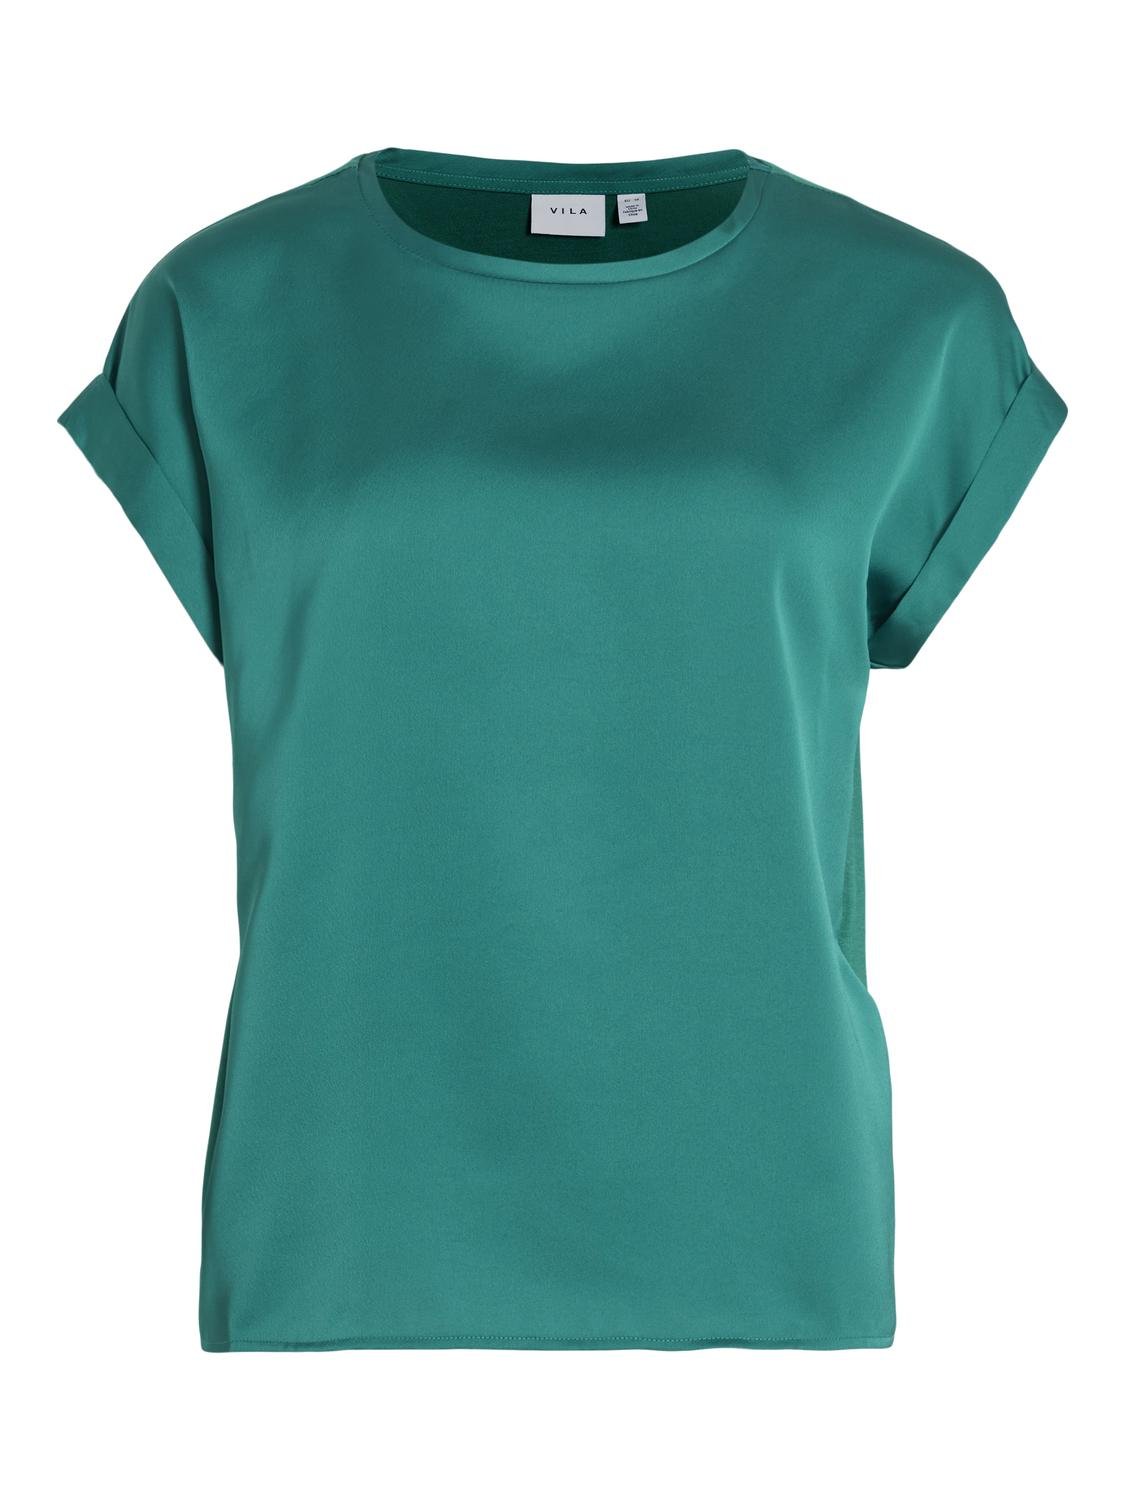 VIELLETTE T-Shirts & Tops - Ultramarine Green